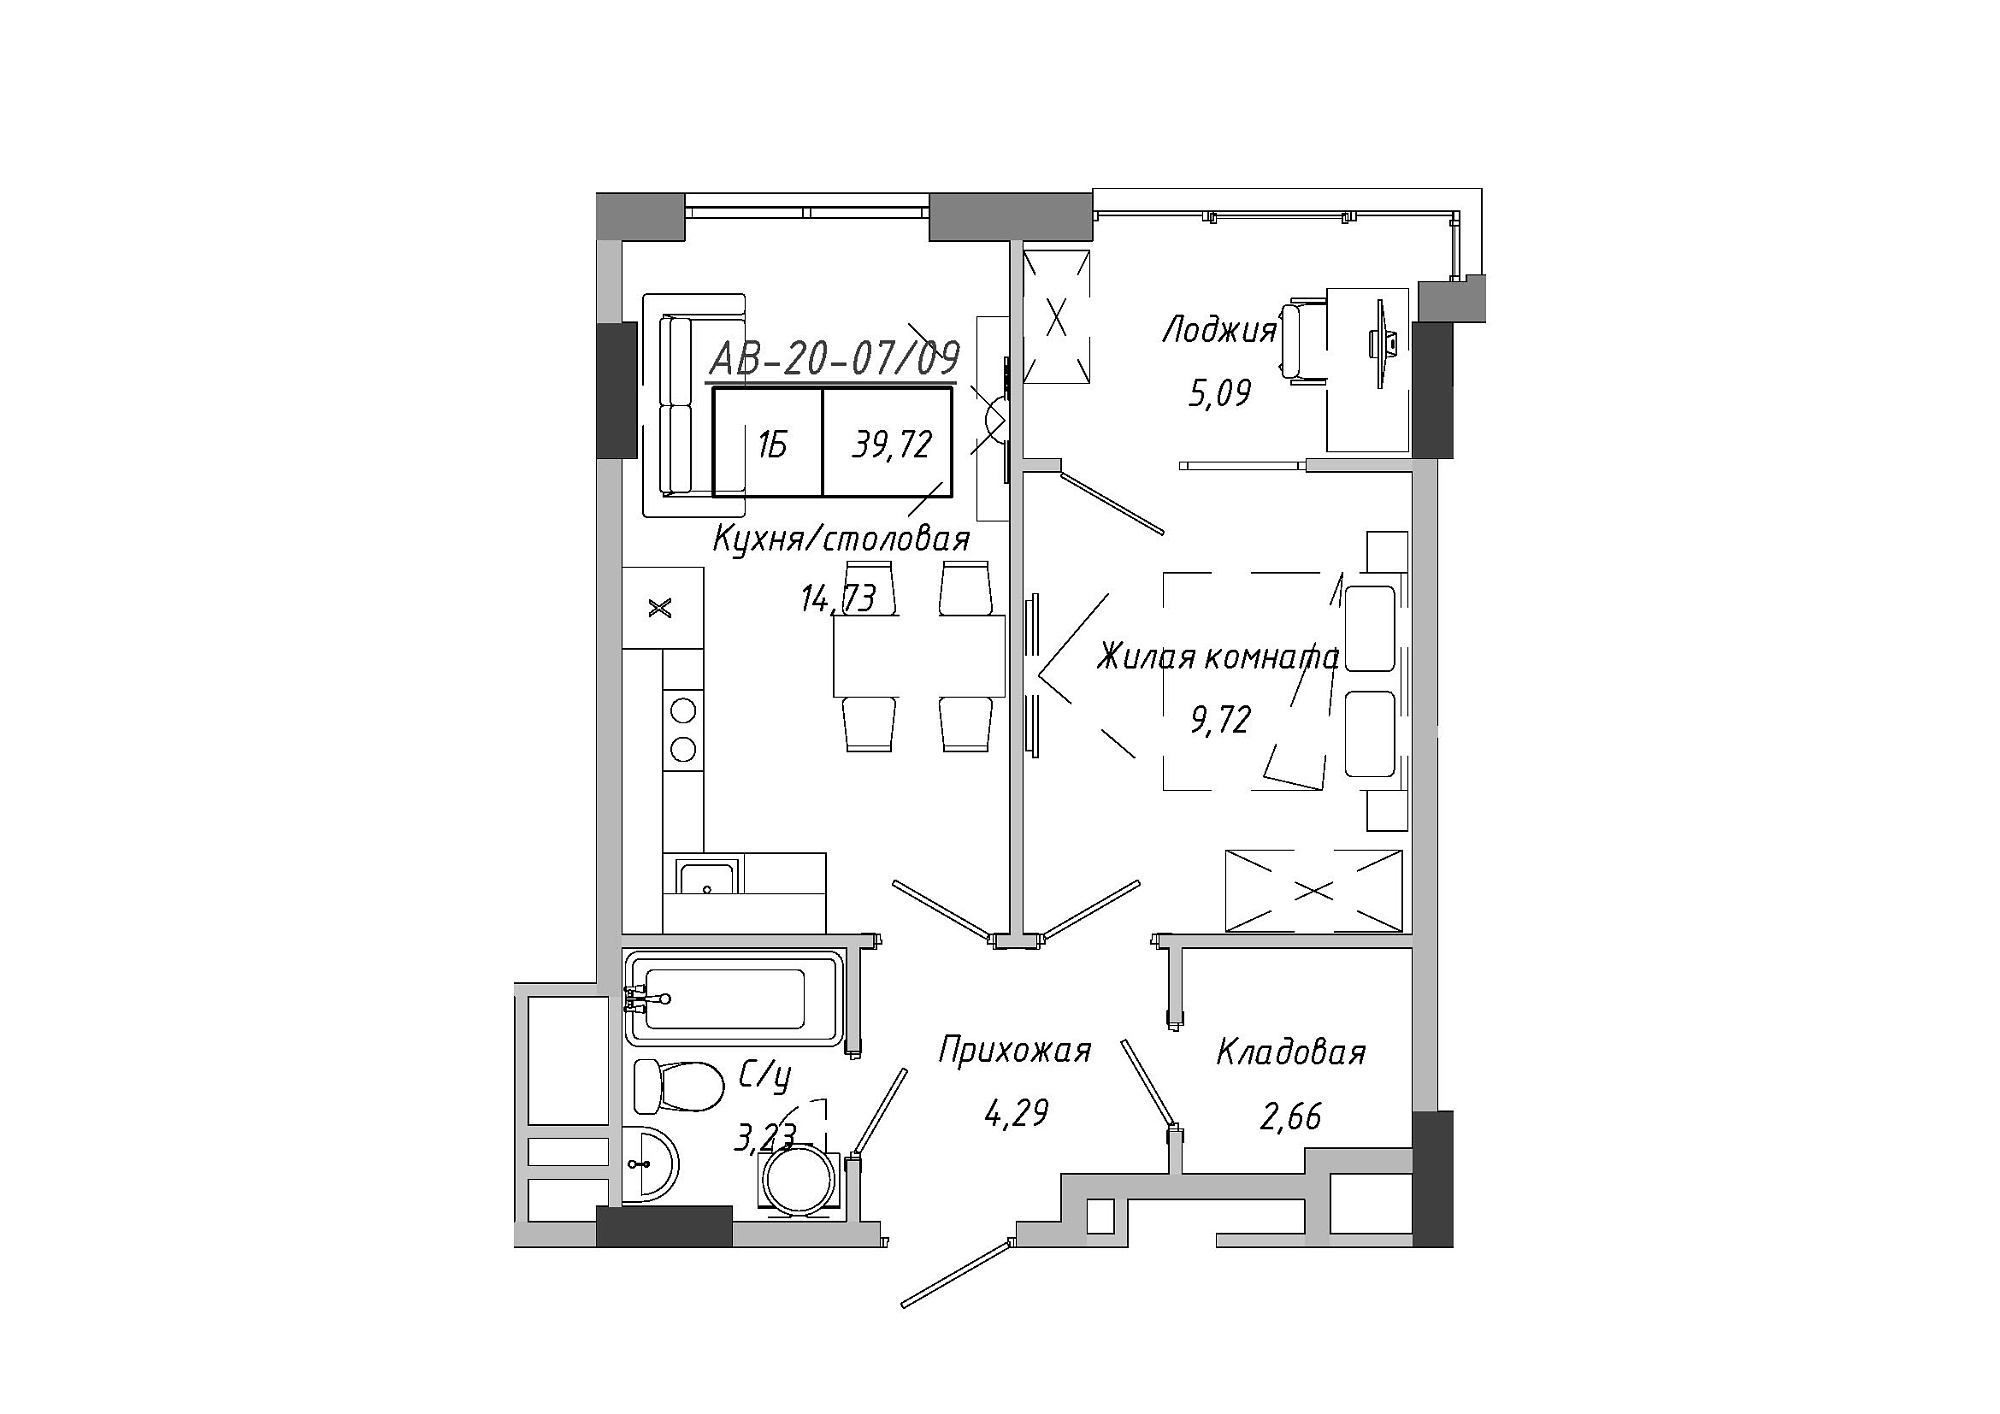 Планування 1-к квартира площею 37.59м2, AB-20-07/00009.